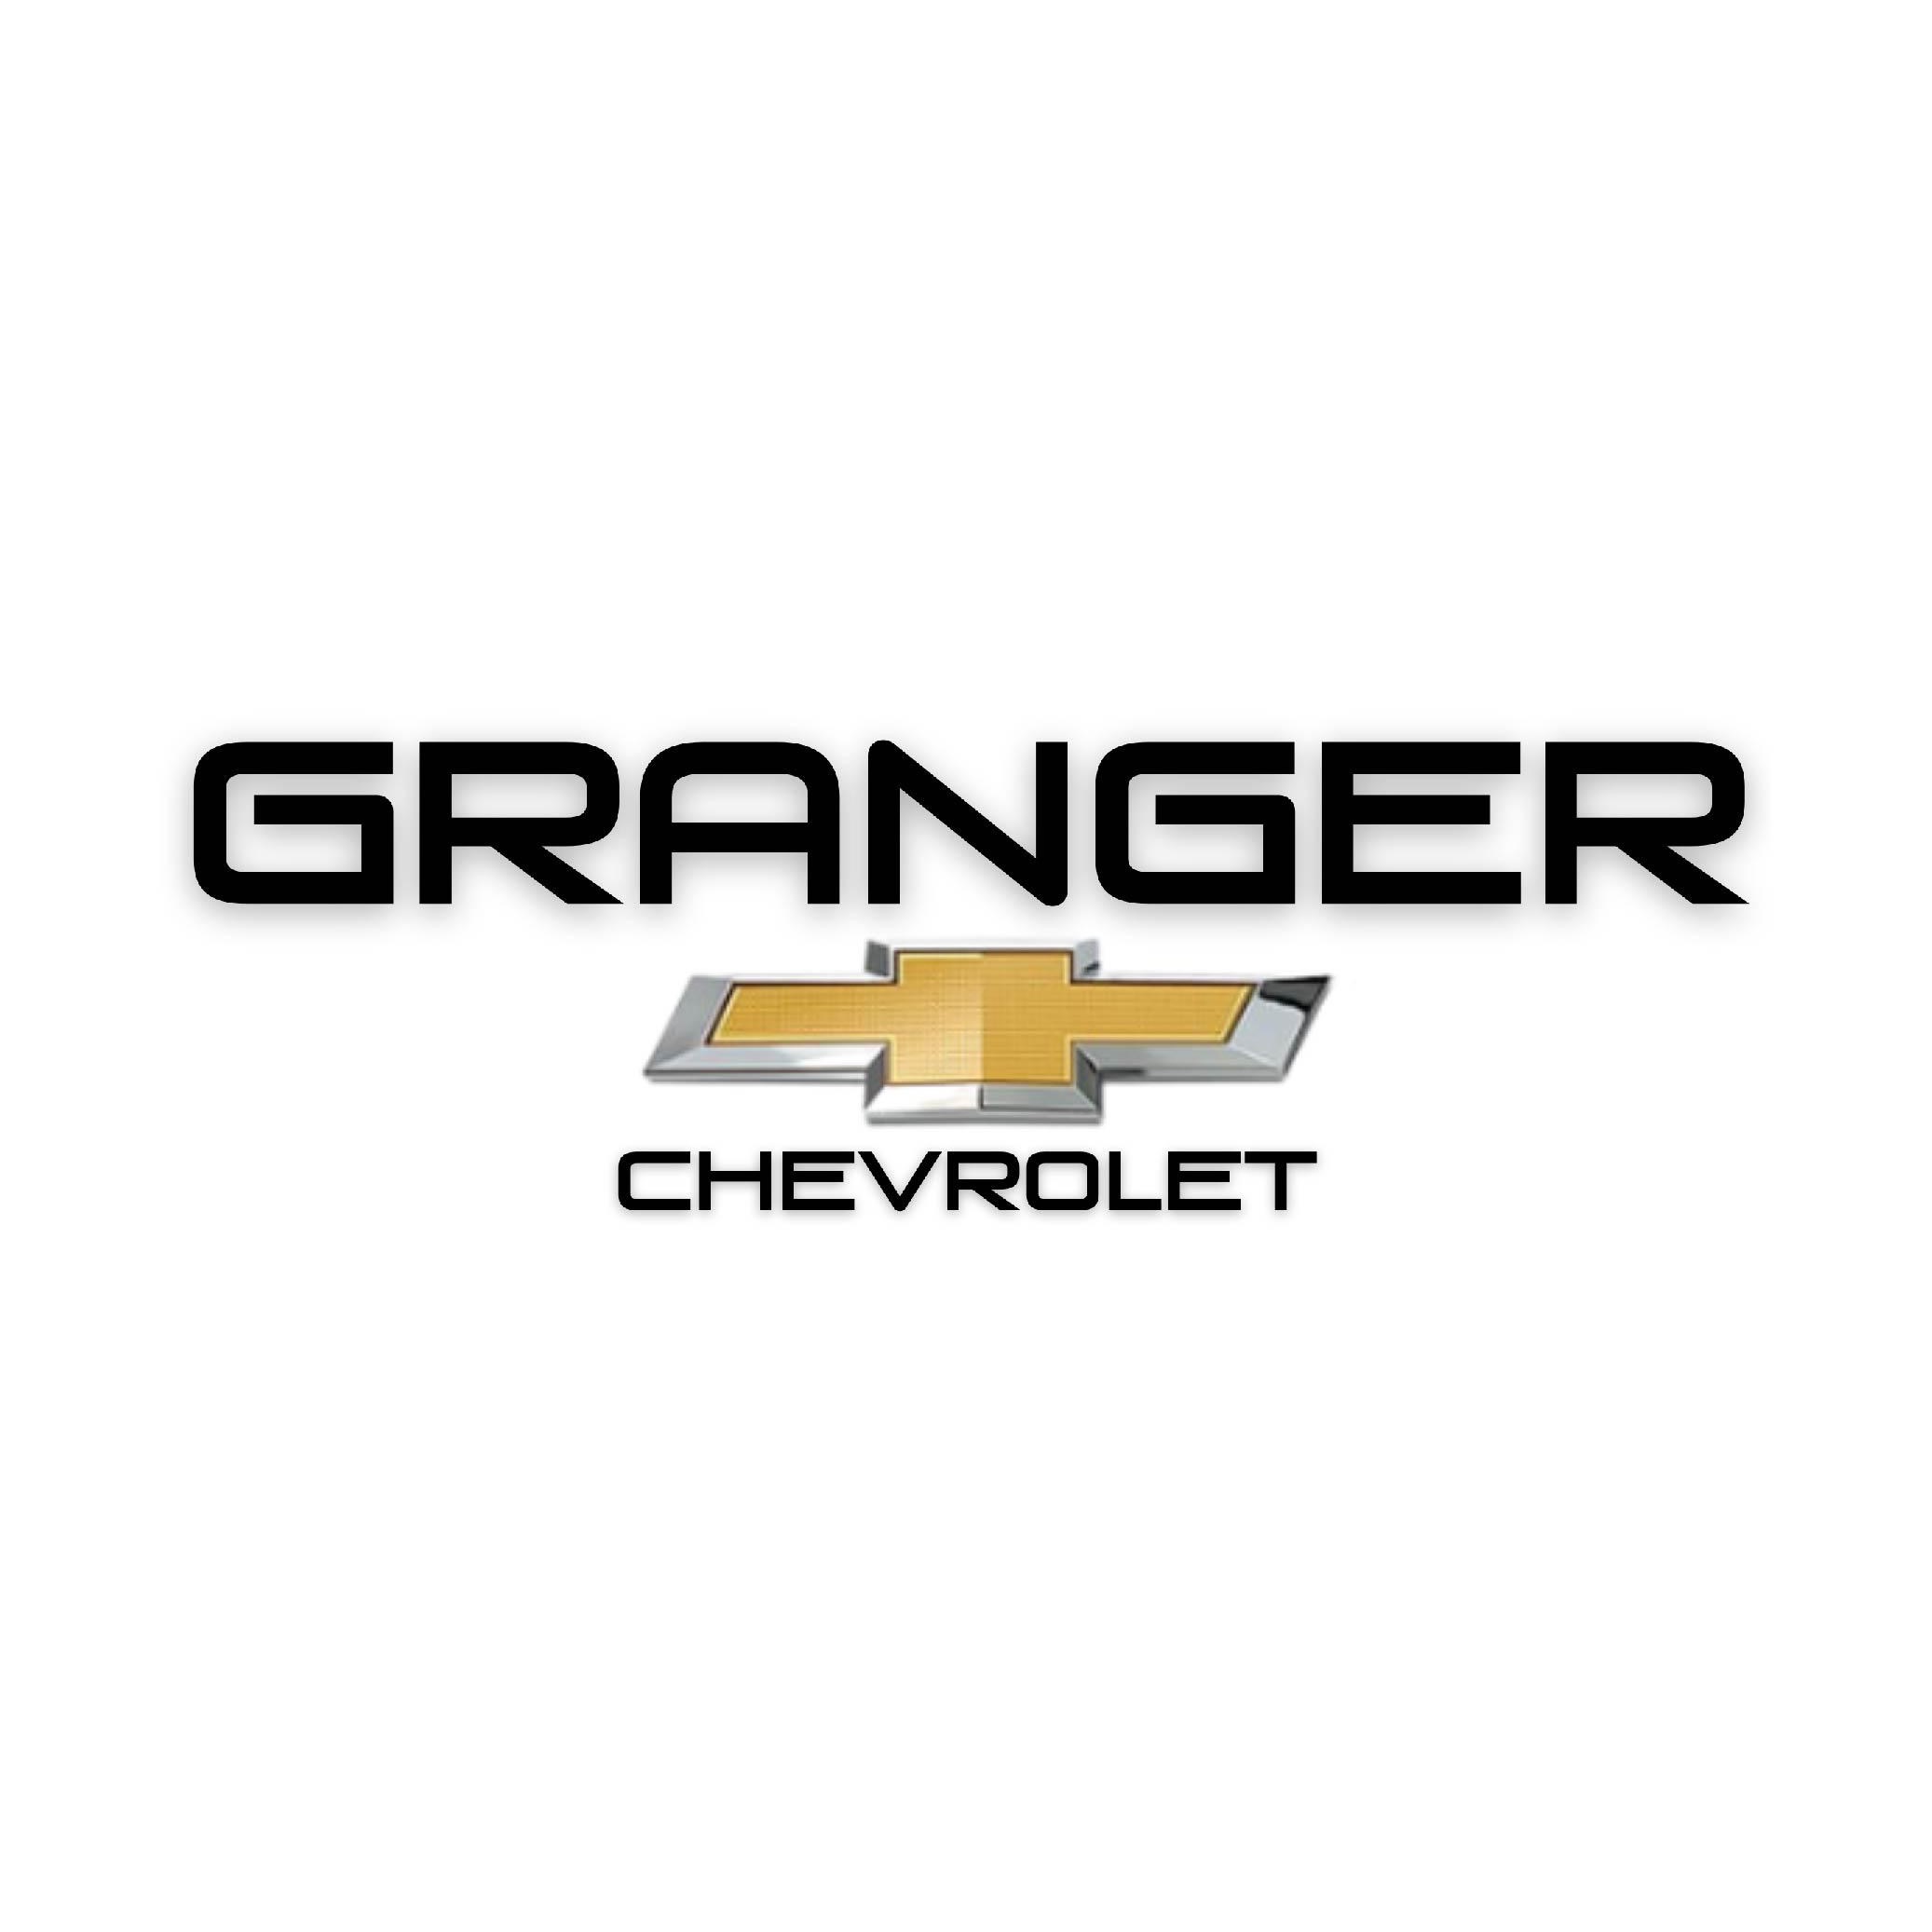 Granger Chevrolet